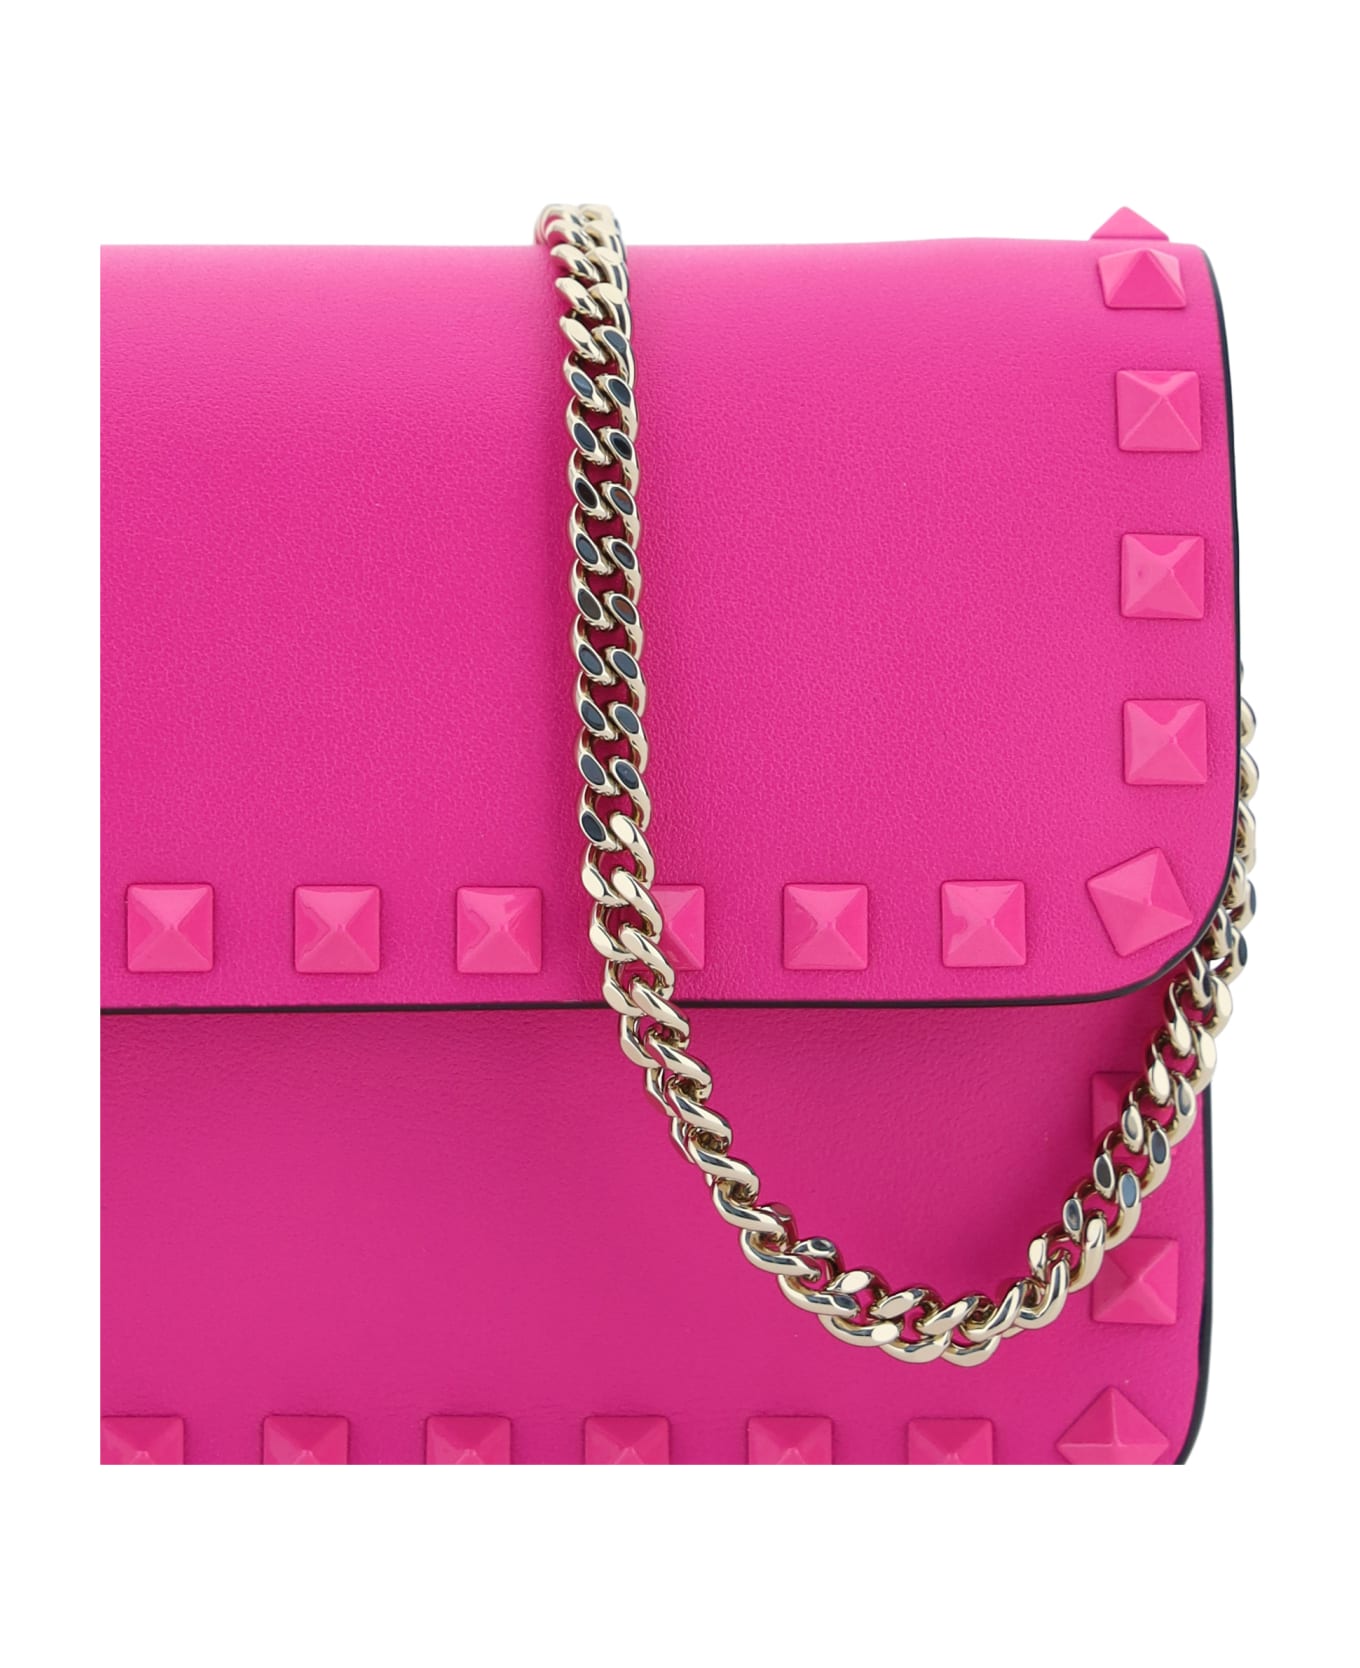 Valentino Garavani Rockstud Handbag - Pink Pp クラッチバッグ